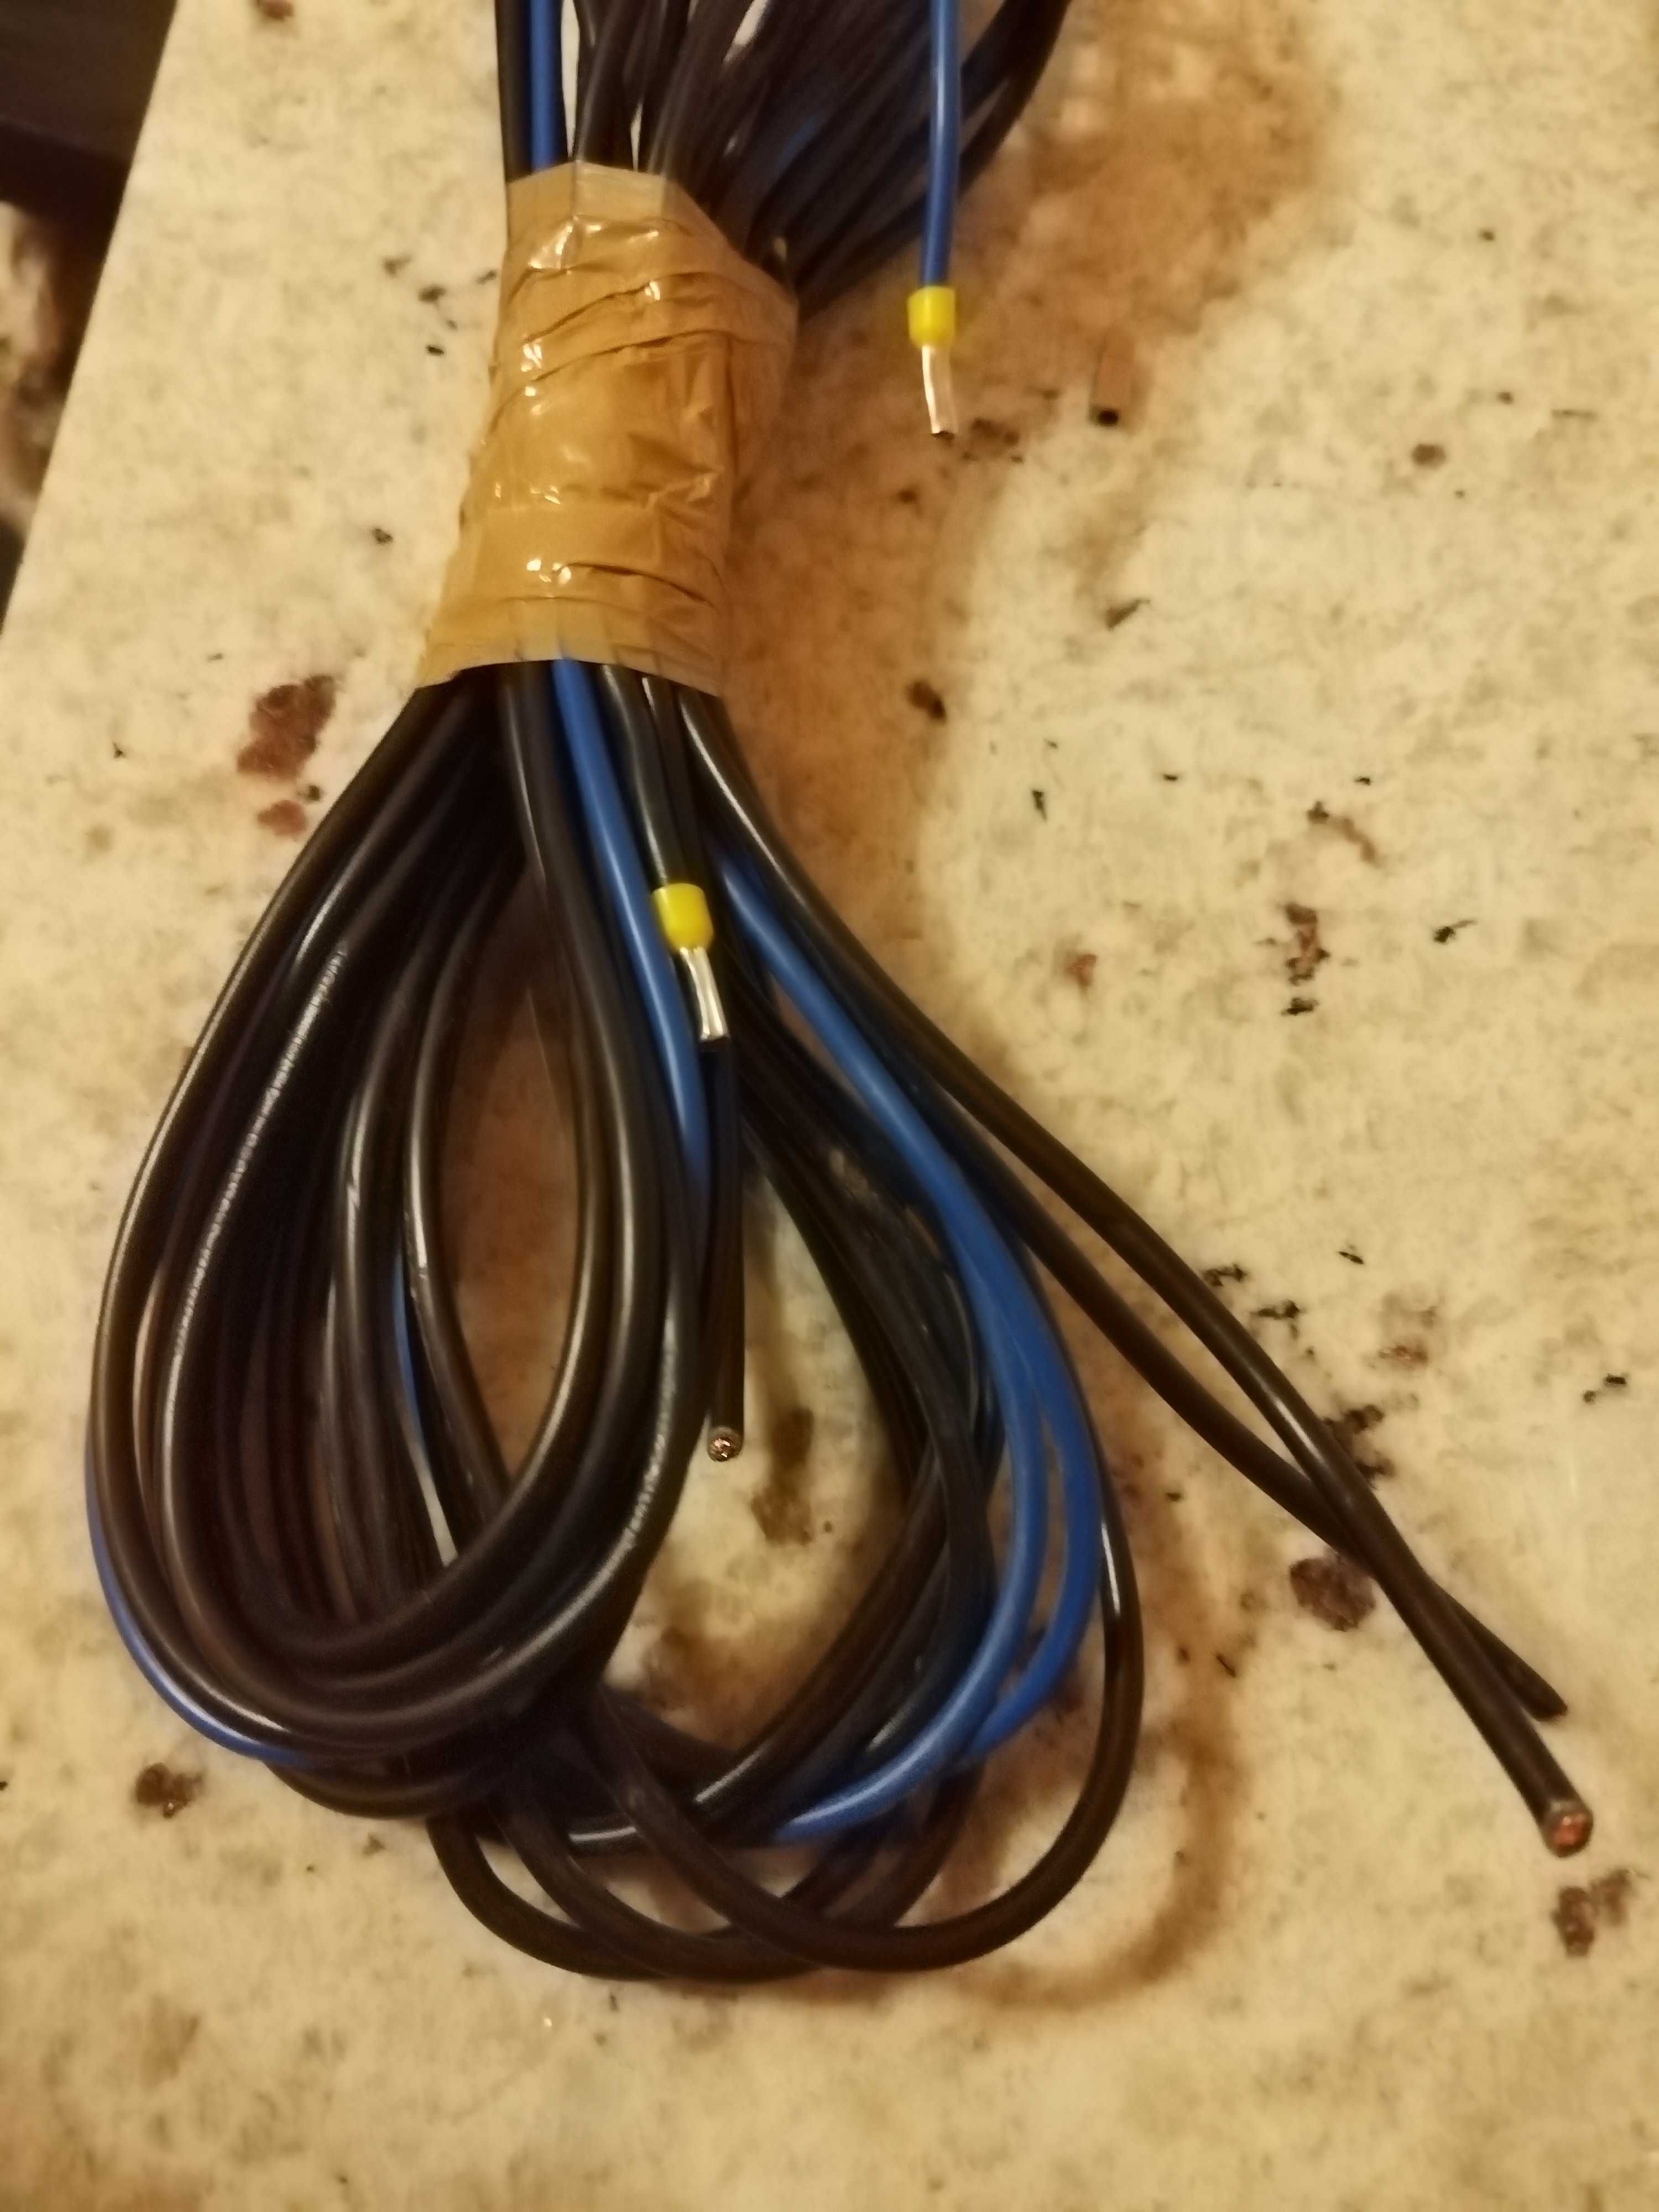 Kabel do rodzielni skrzynki elektrycznej i listwy zaciskowe